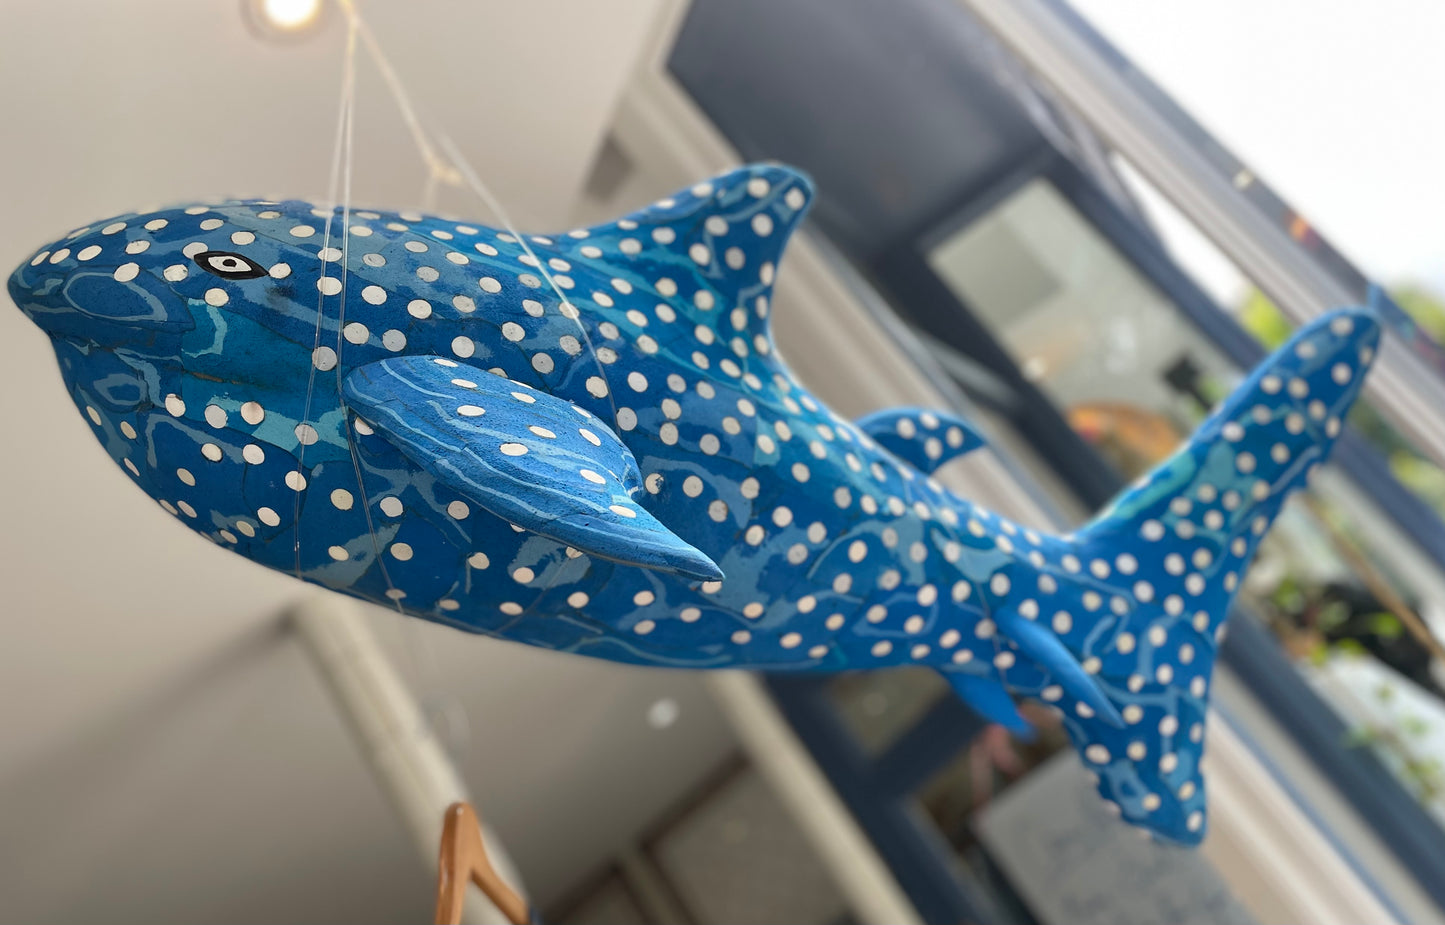 A Flip Flop Art Shark from mpira.